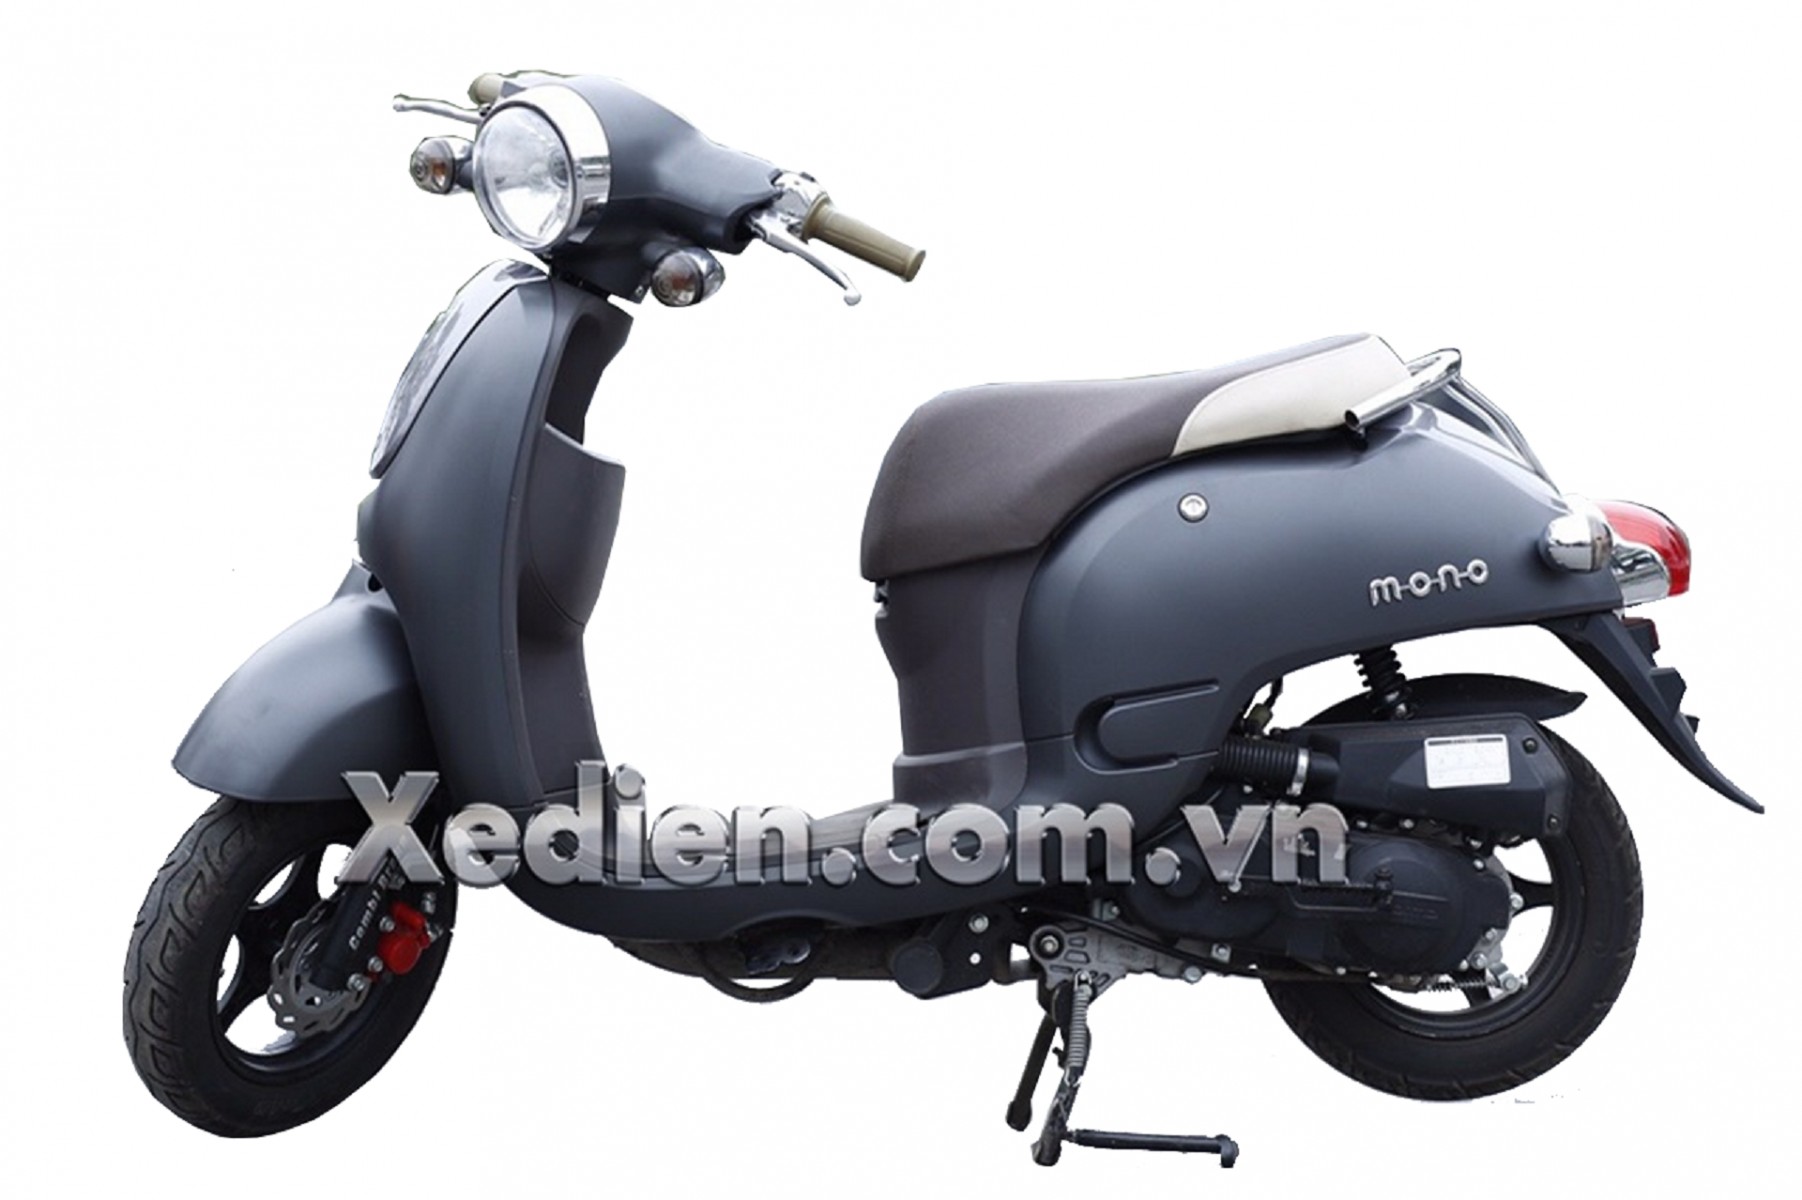 Xe máy 50cc Giorno Smile: Sự lựa chọn cho thời đại mới!